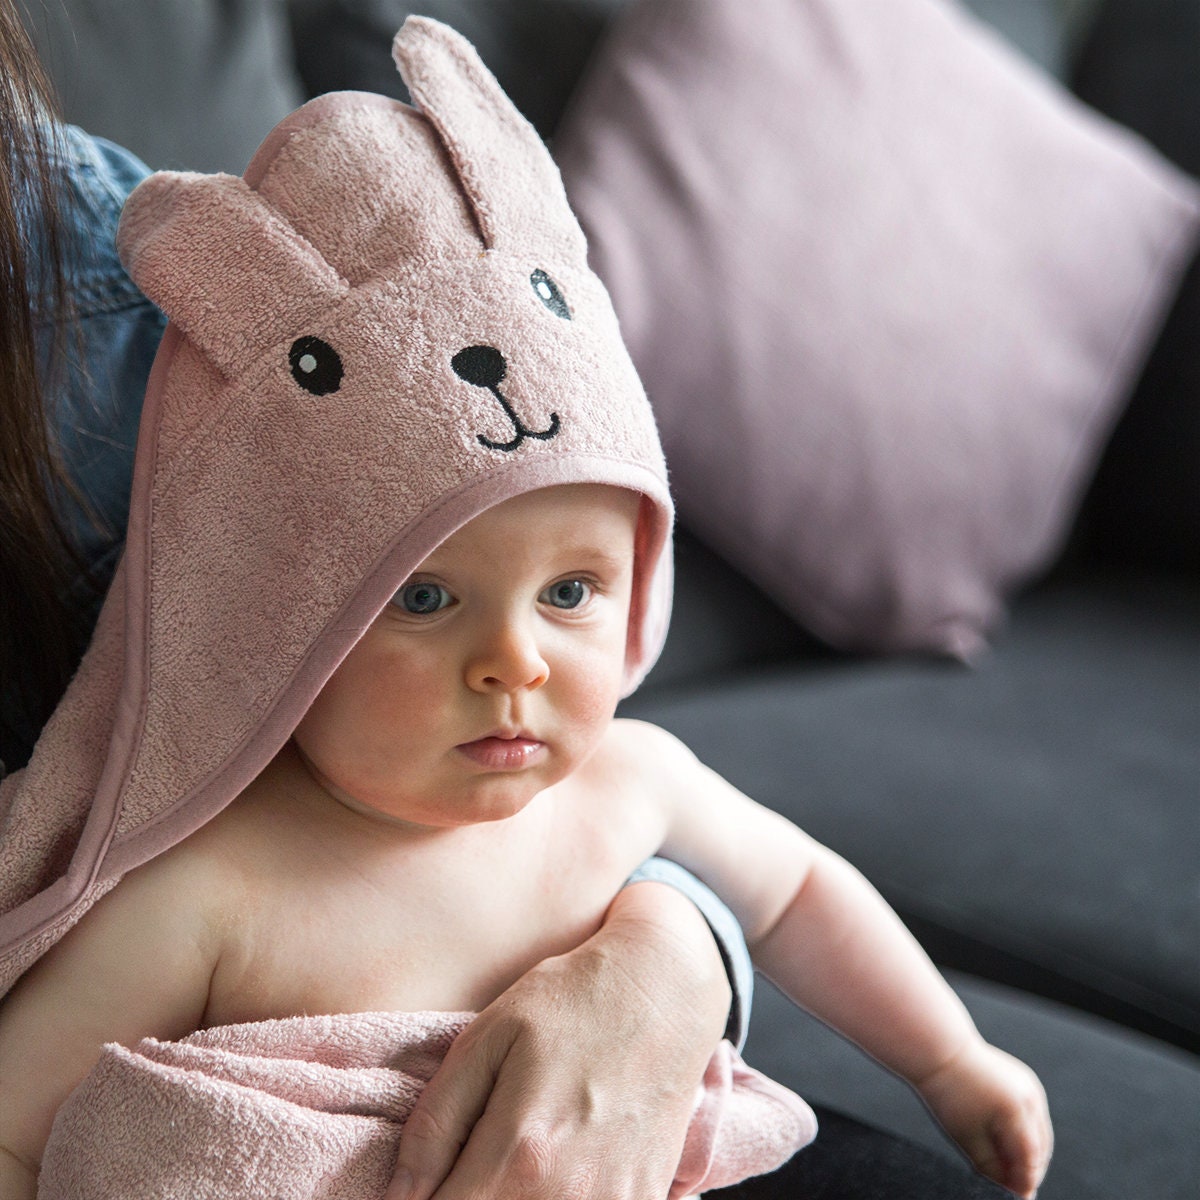 Toalla de bebé con capucha personalizada para regalo. Bkybebe